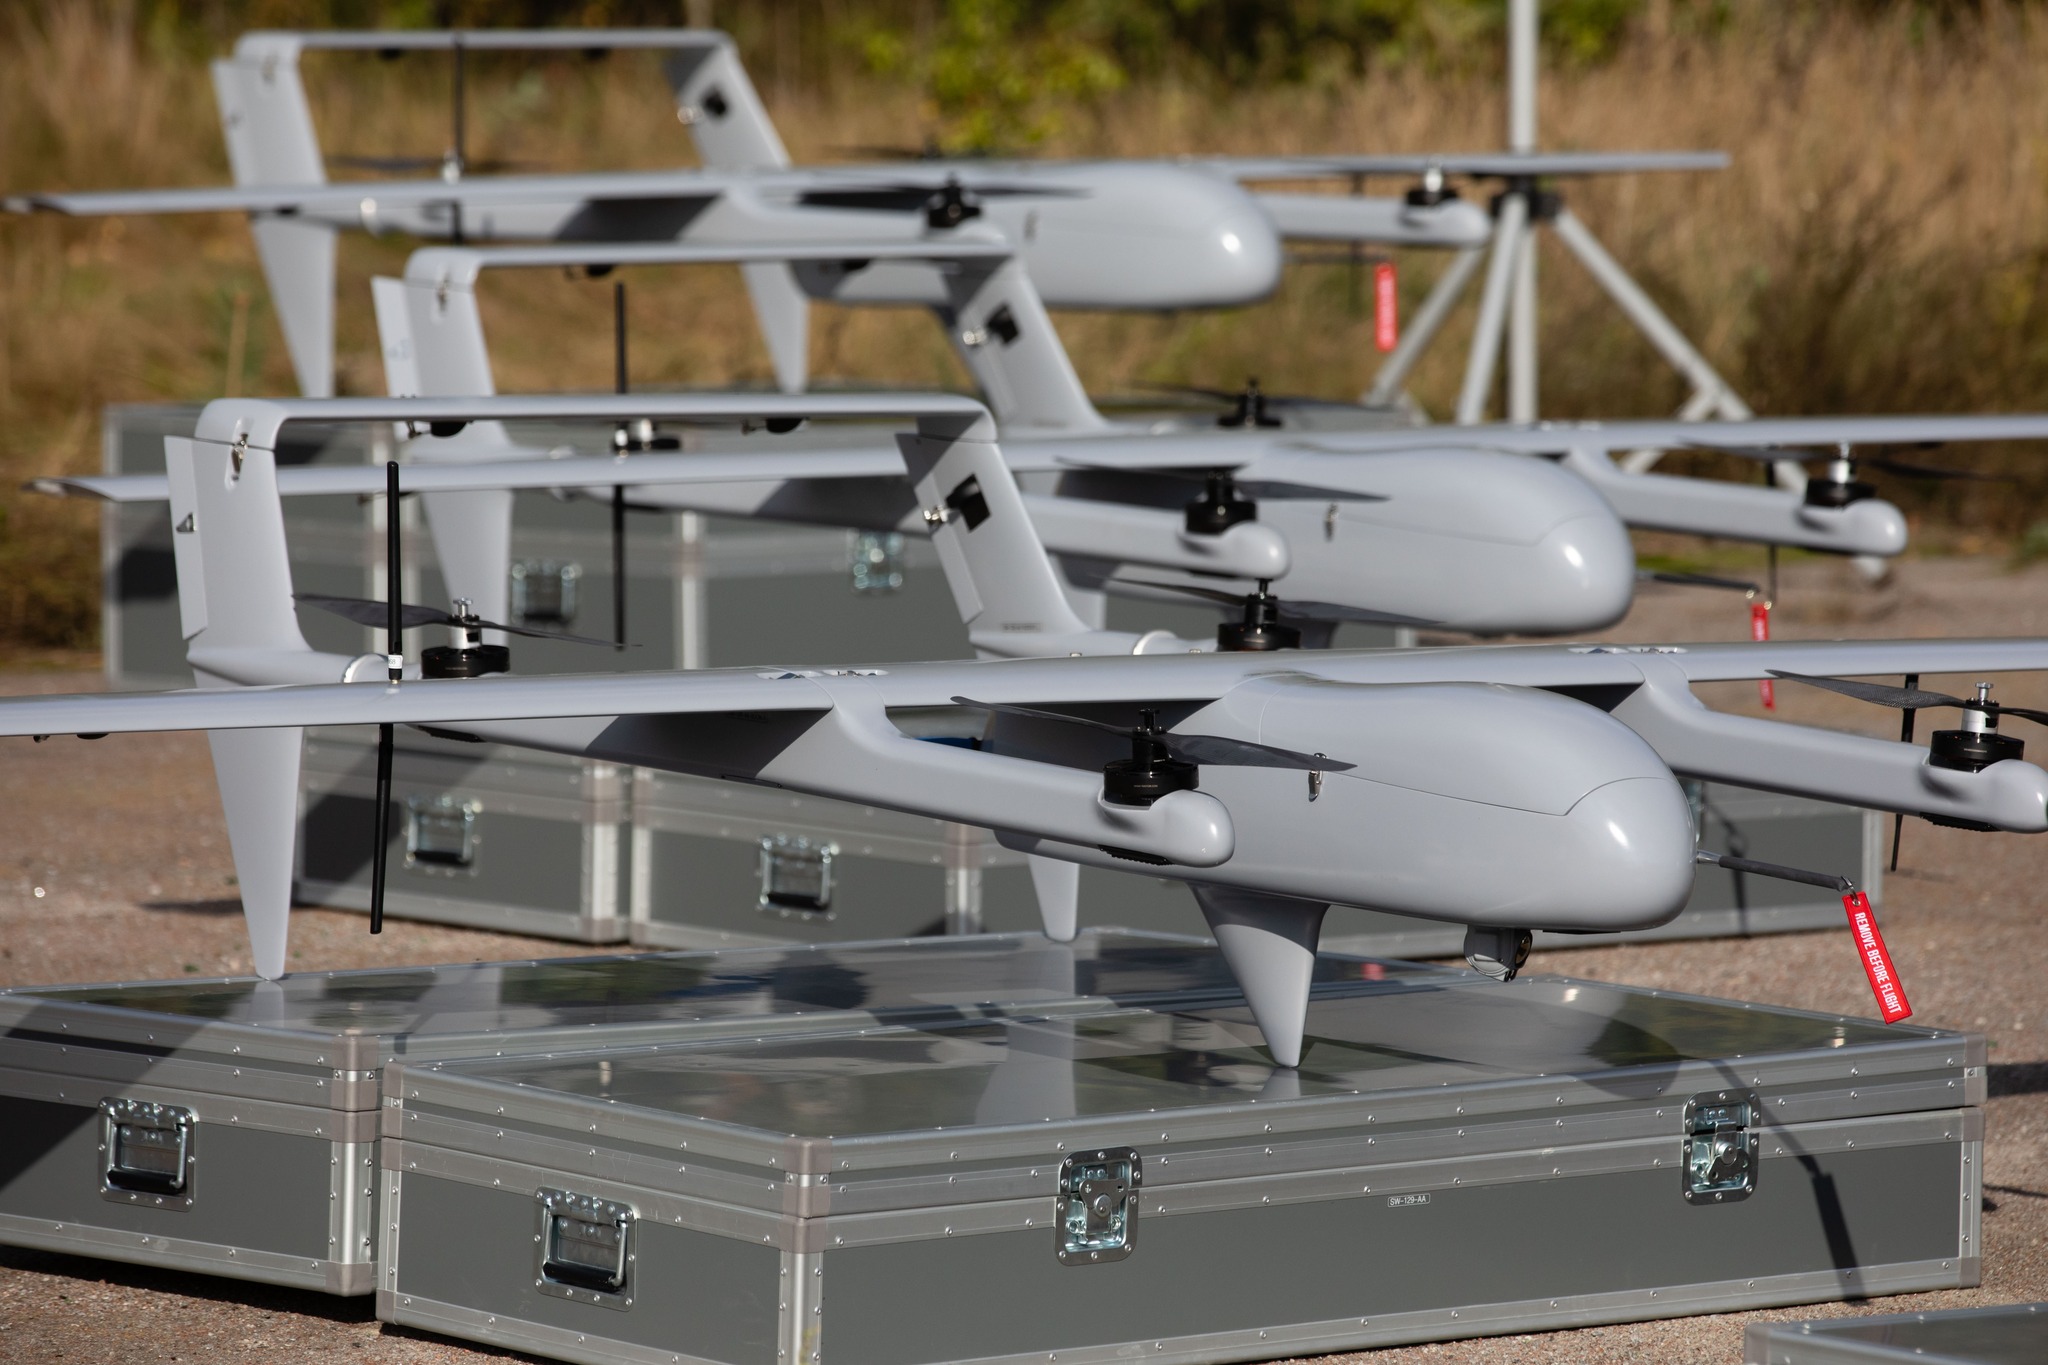 Freiwillige haben sechs H10 Poseidon-Drohnen für die AFU gekauft. Sie verfügen über eine israelische Optik und eine Wärmebildkamera und können bis zu 150 km weit fliegen.